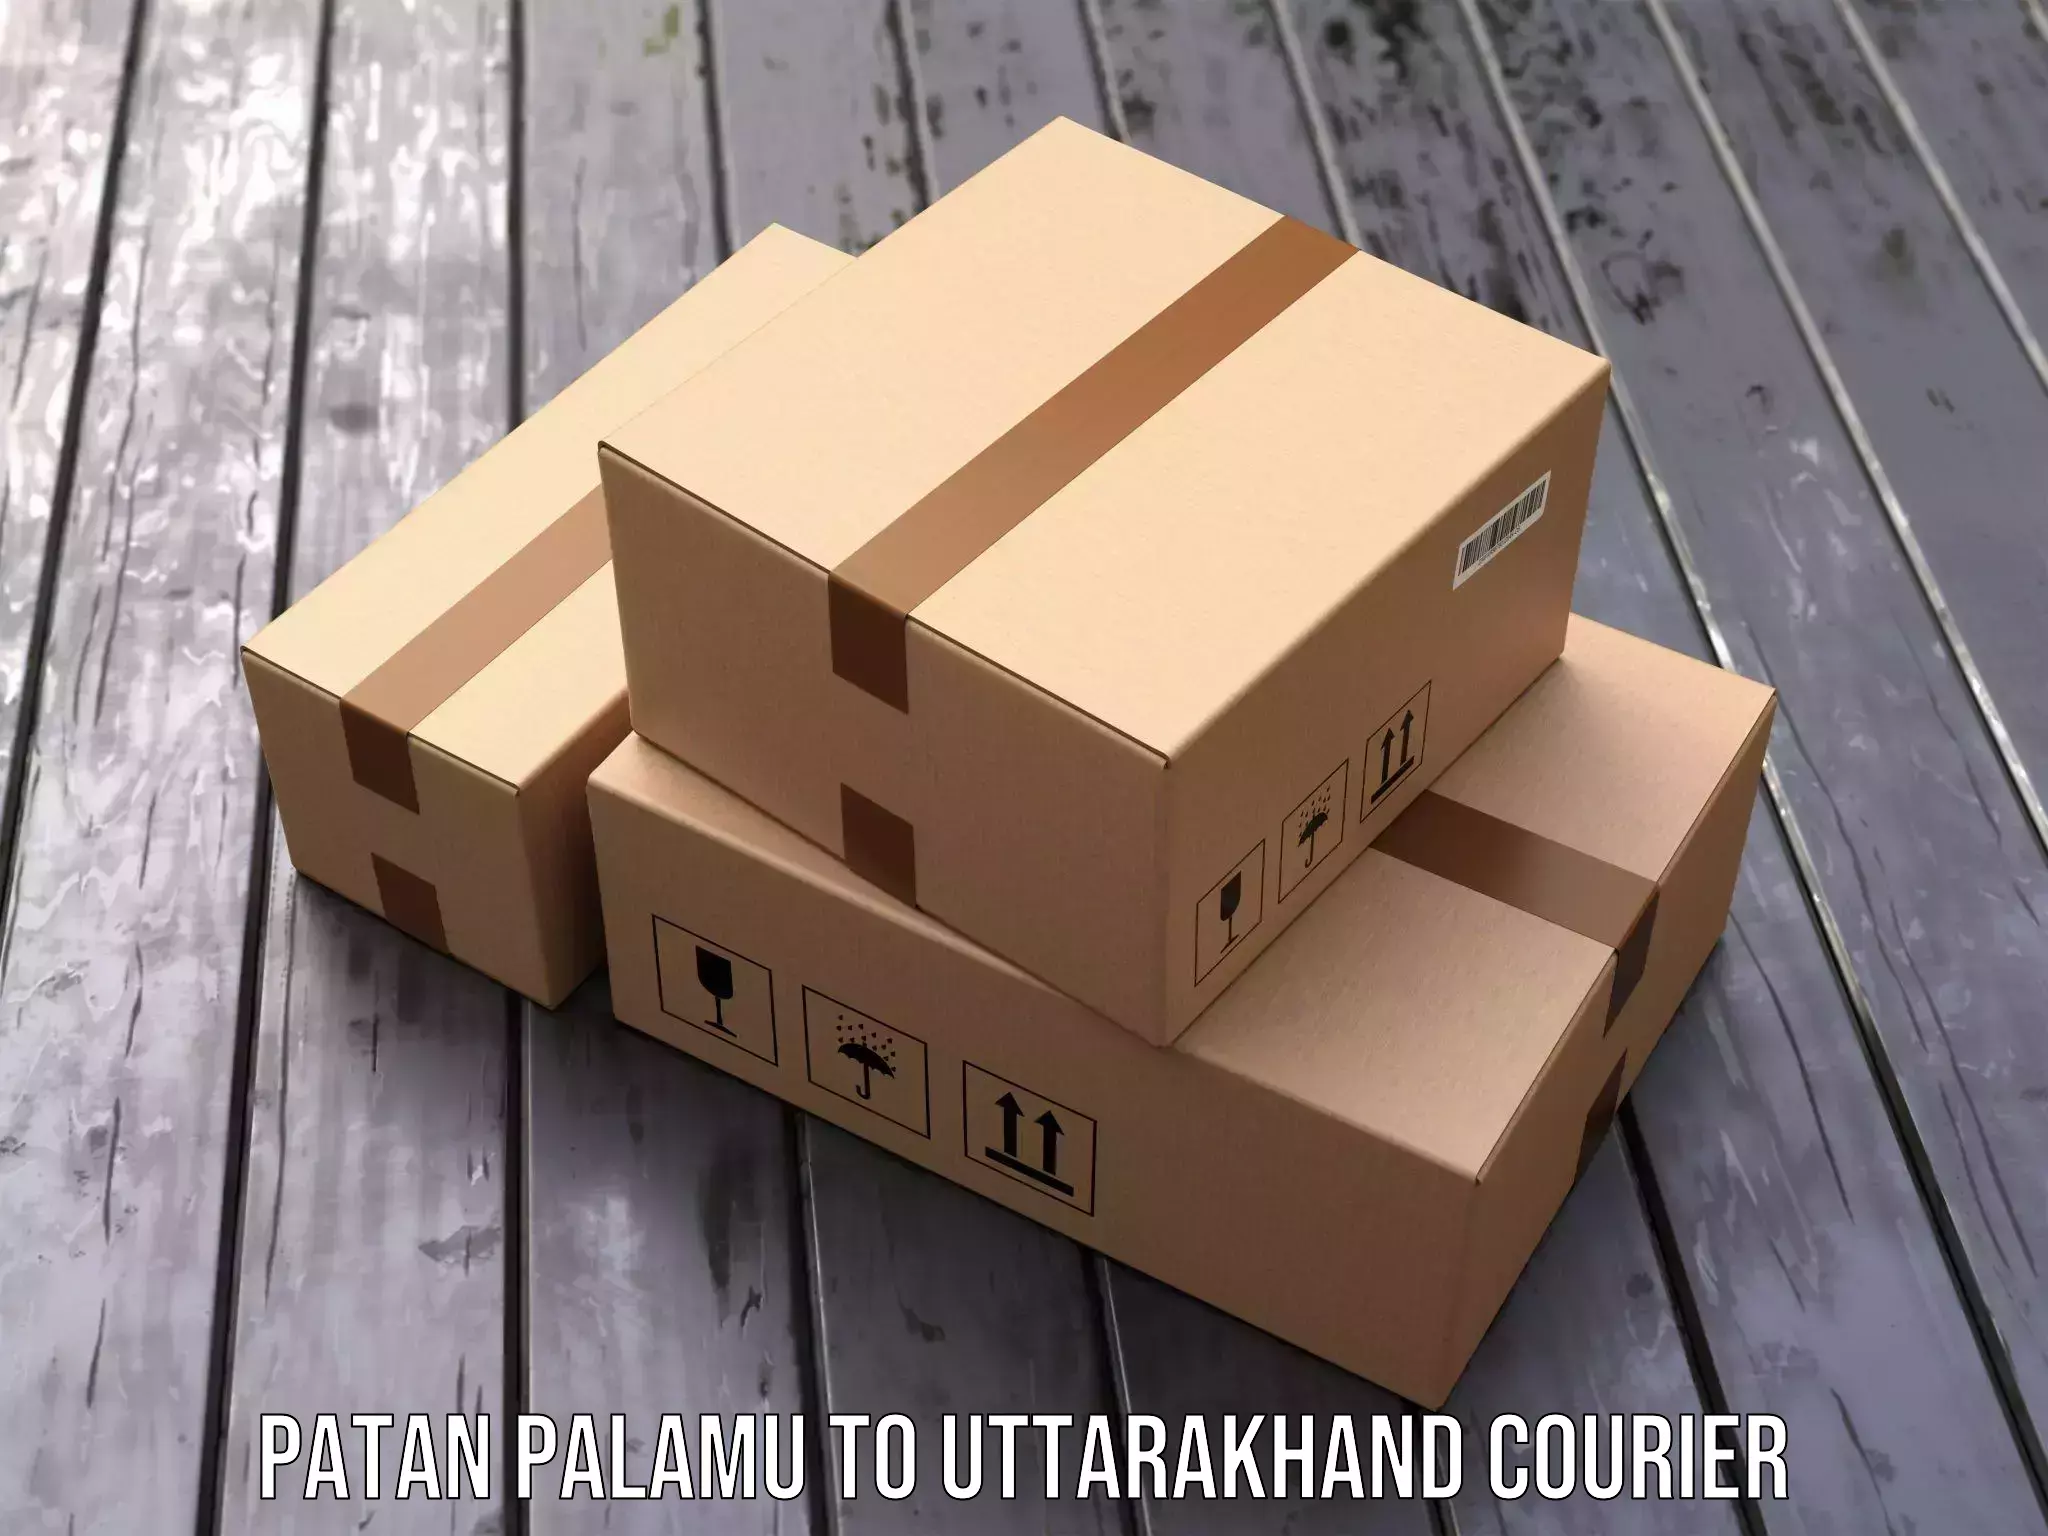 Modern delivery technologies Patan Palamu to Uttarakhand